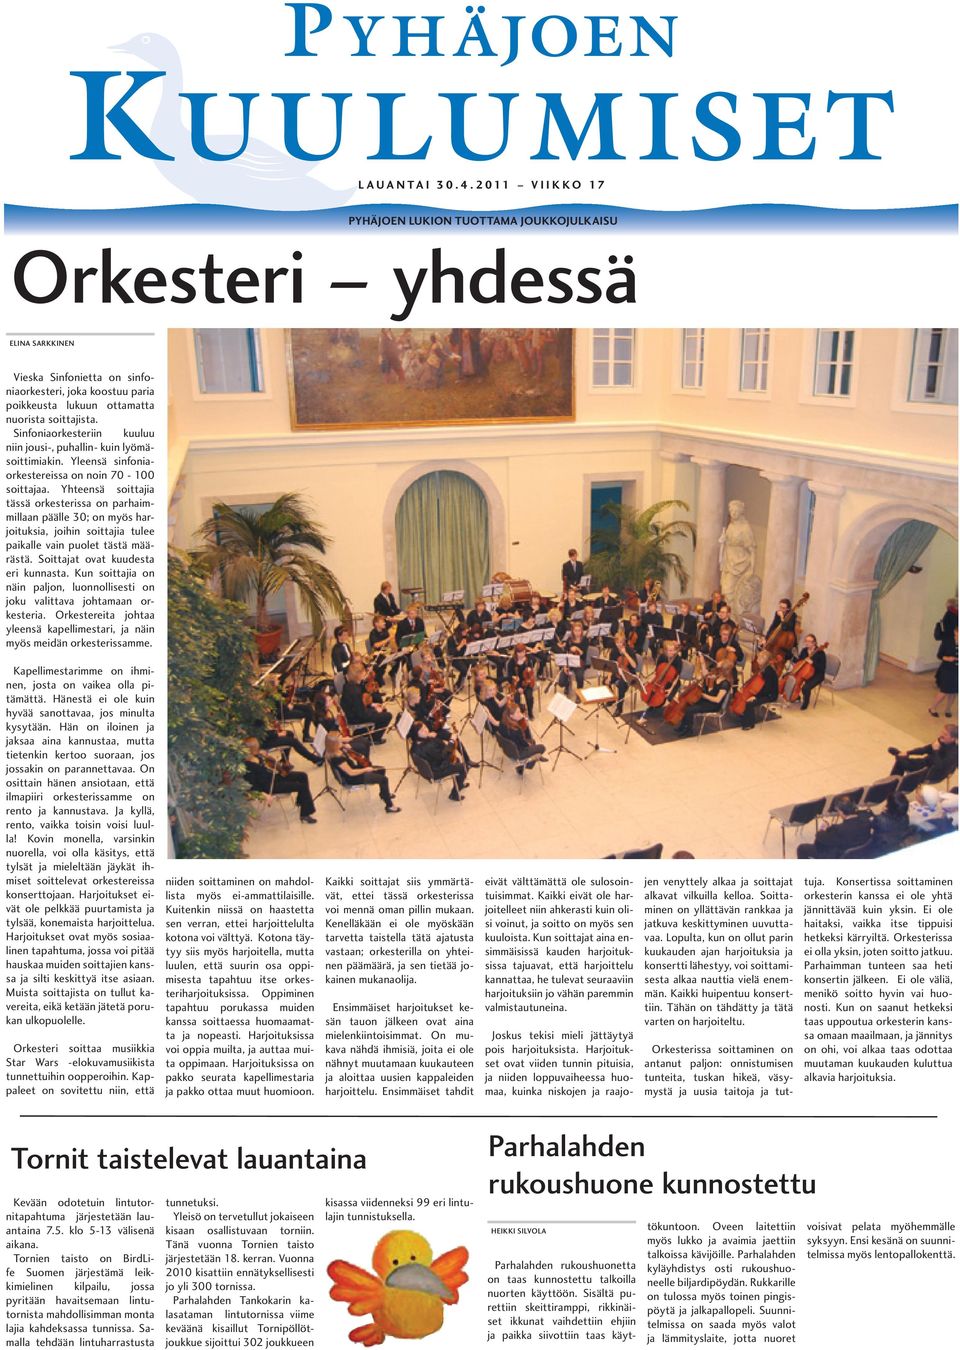 Sinfoniaorkesteriin kuuluu niin jousi-, puhallin- kuin lyömäsoittimiakin. Yleensä sinfoniaorkestereissa on noin 70-100 soittajaa.